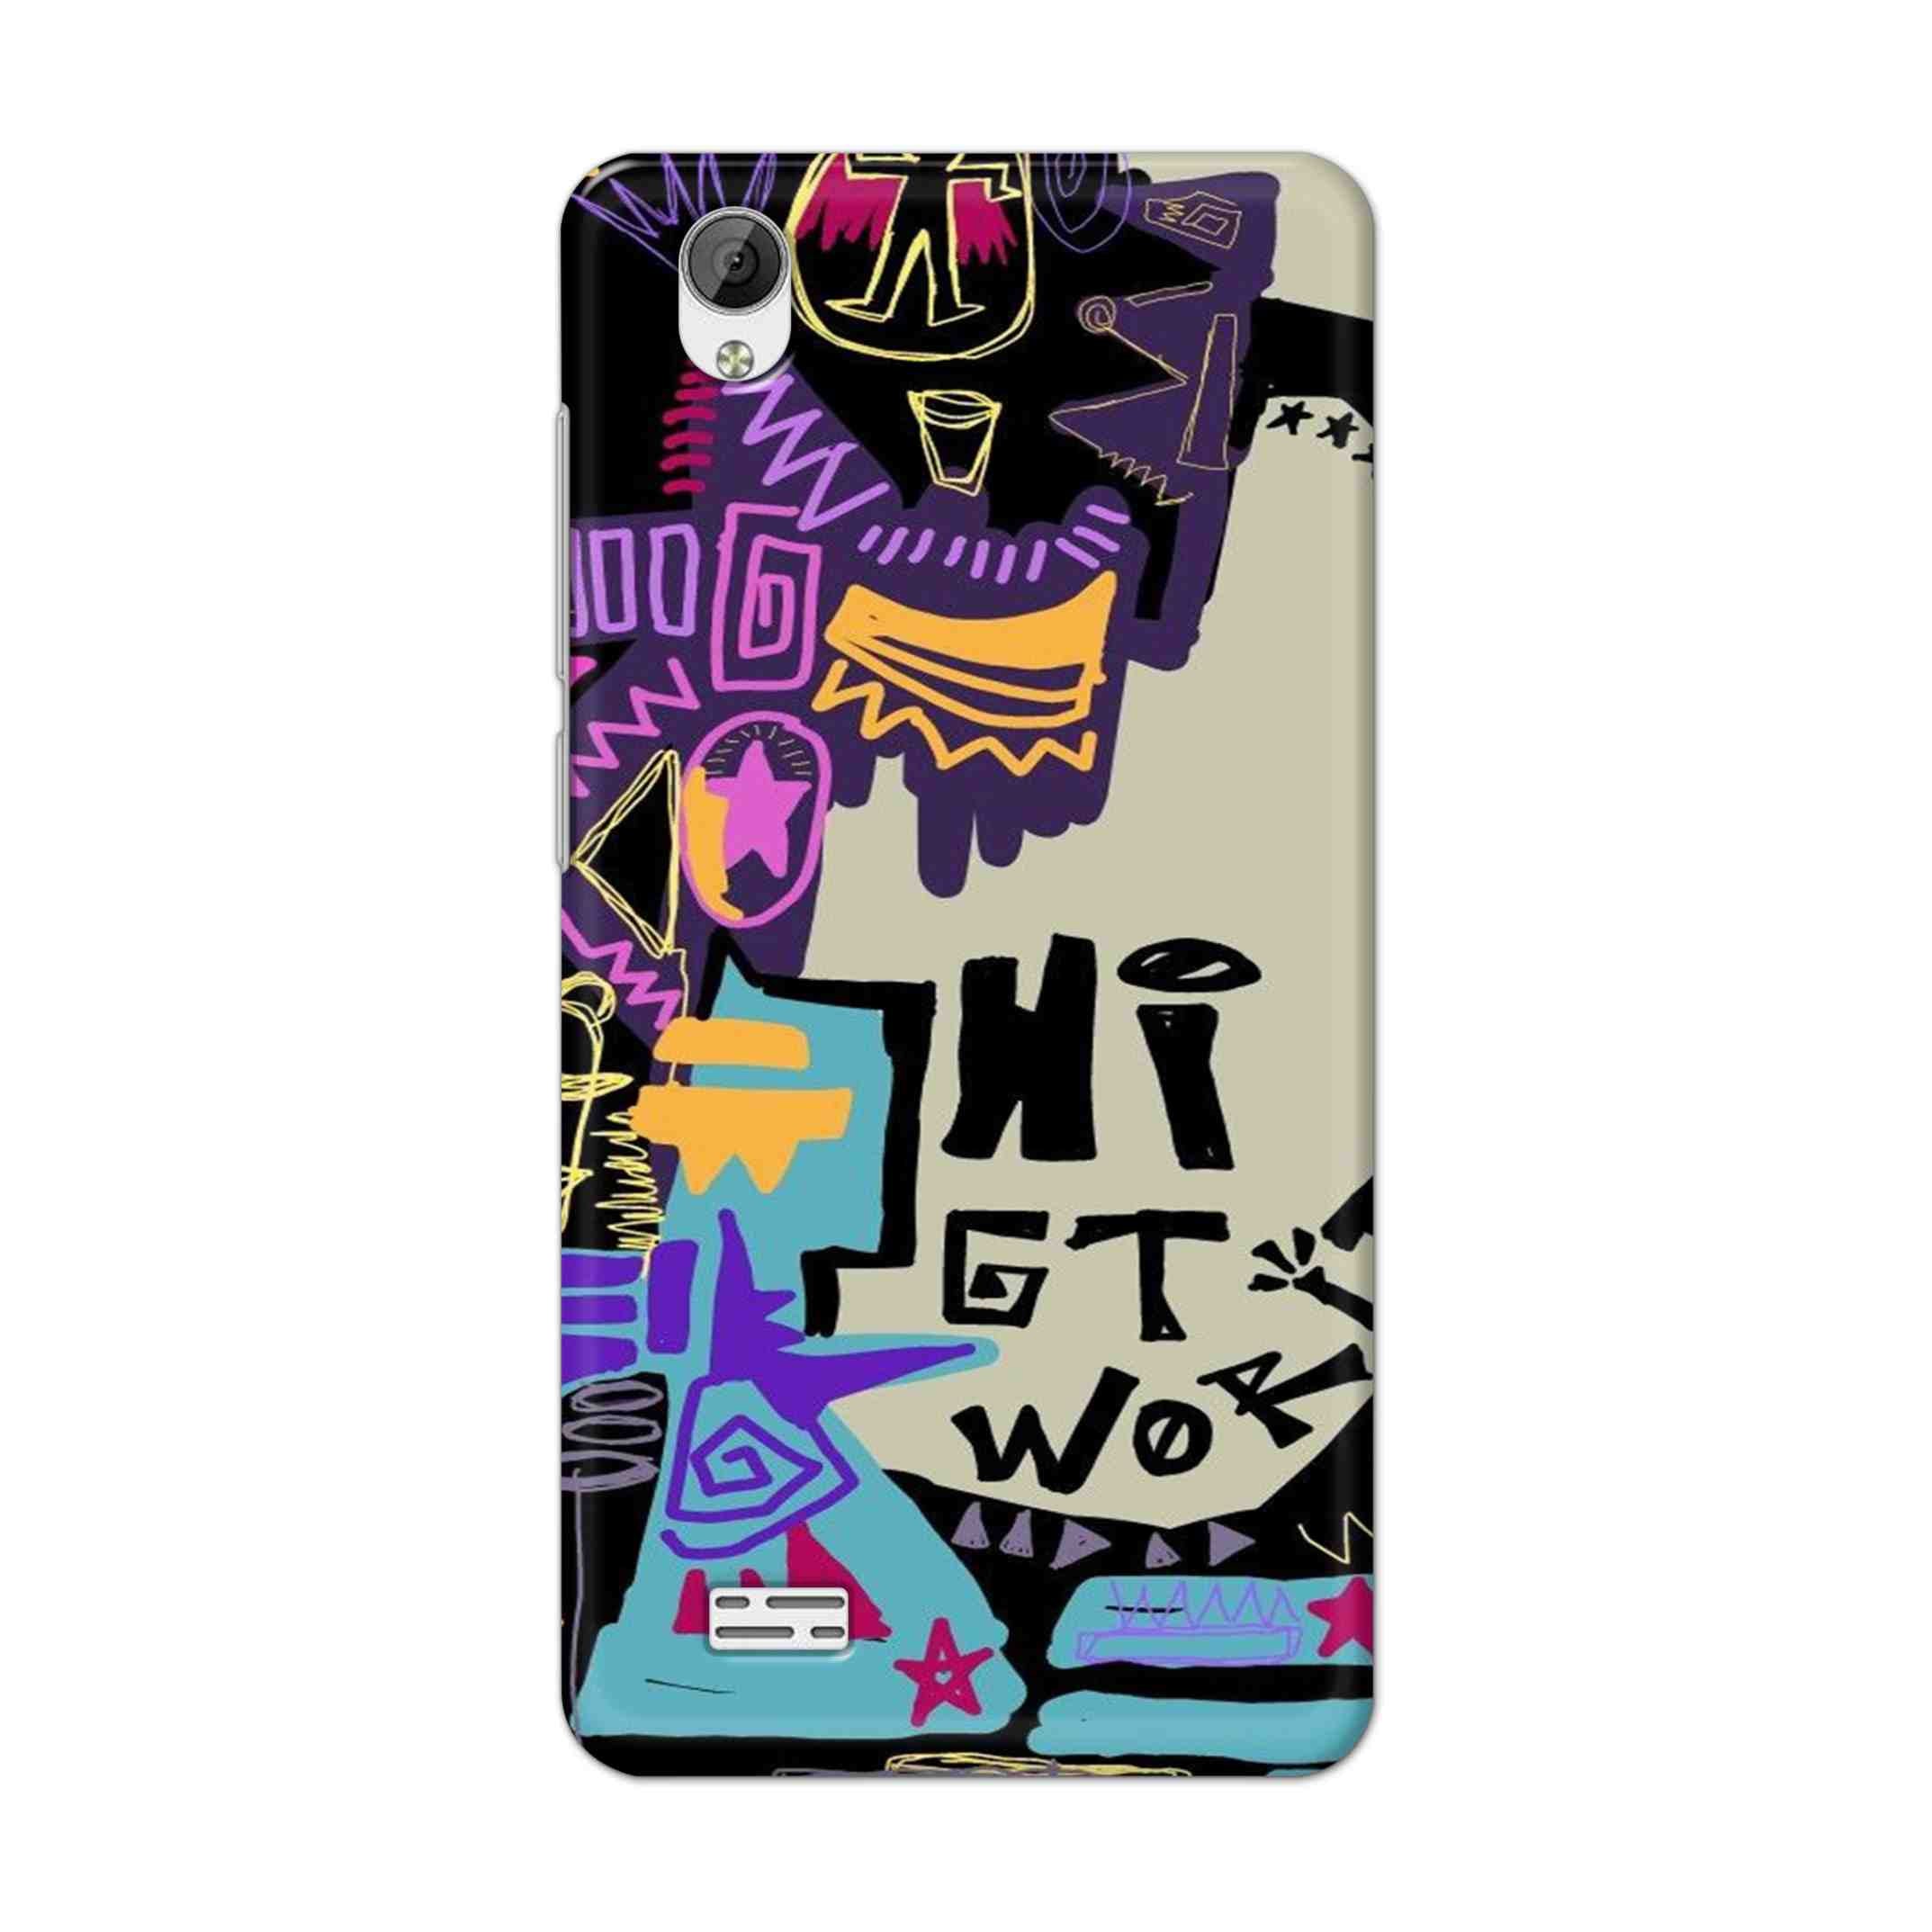 Buy Hi Gt World Hard Back Mobile Phone Case Cover For Vivo Y31 Online